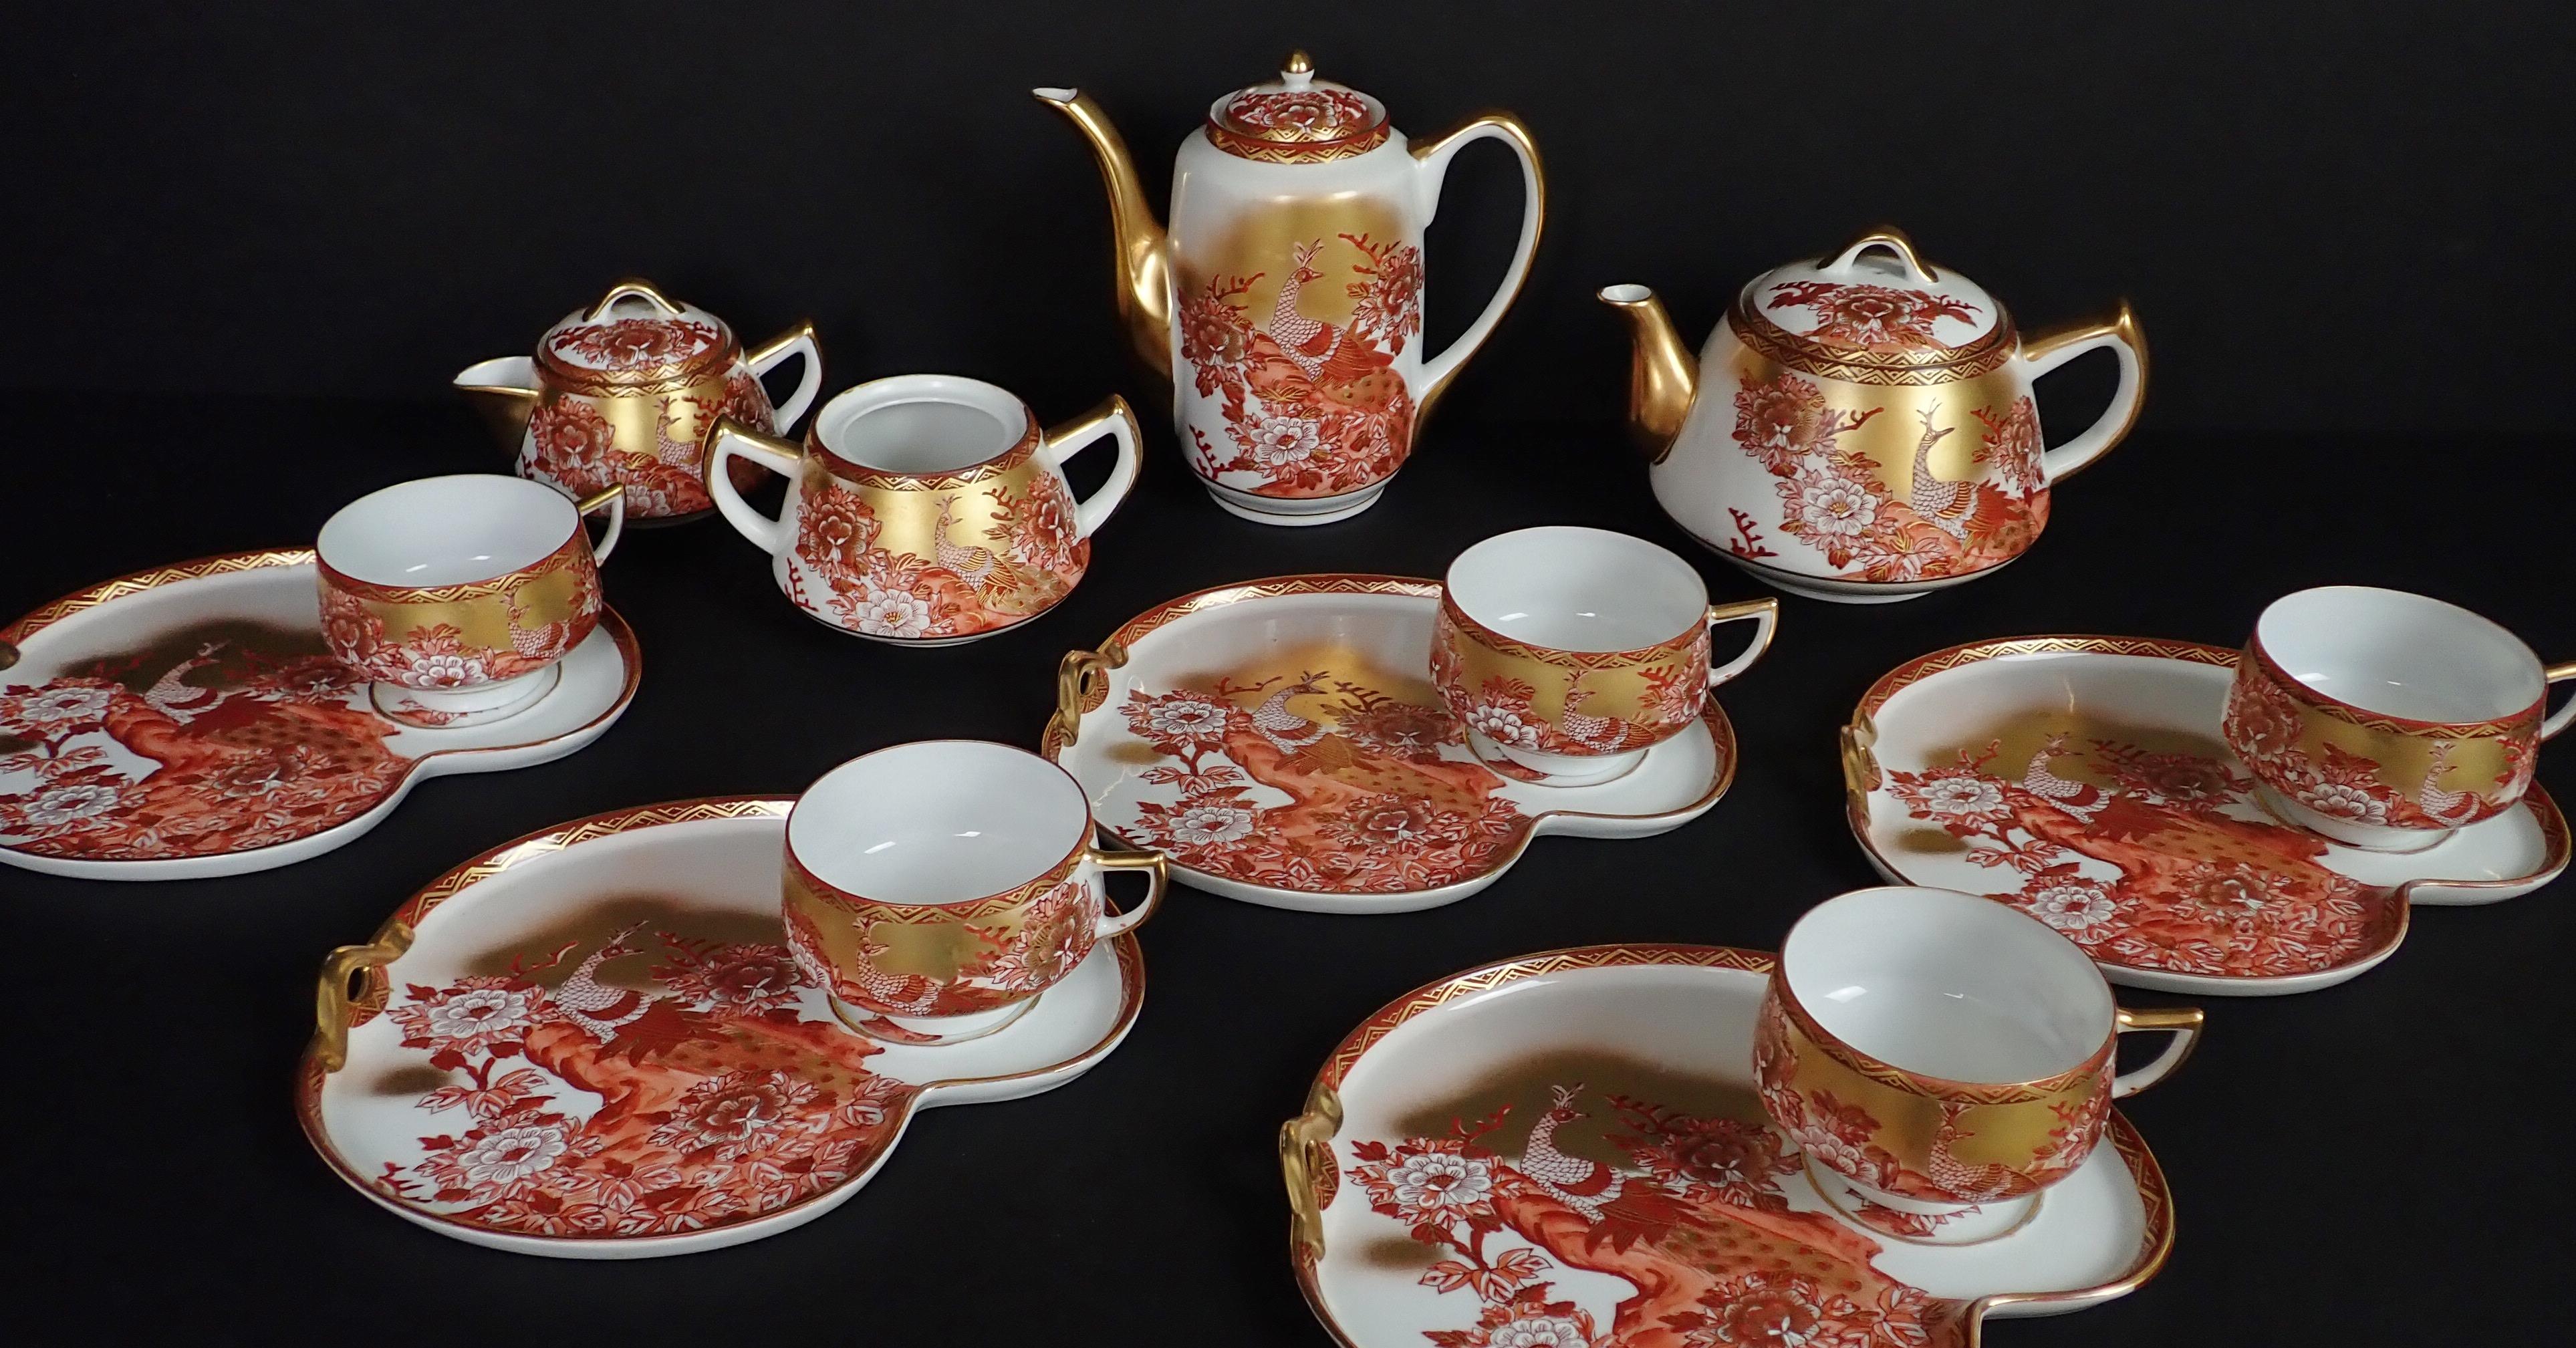 Service à thé et à dessert japonais Kutani, 14 pièces, doré et peint, avec paon. Service à thé et service en forme de paon, peint à la main et doré. Elle est ornée d'un motif floral et d'un paon.
Théières et cafetières à couvercle, crémier à